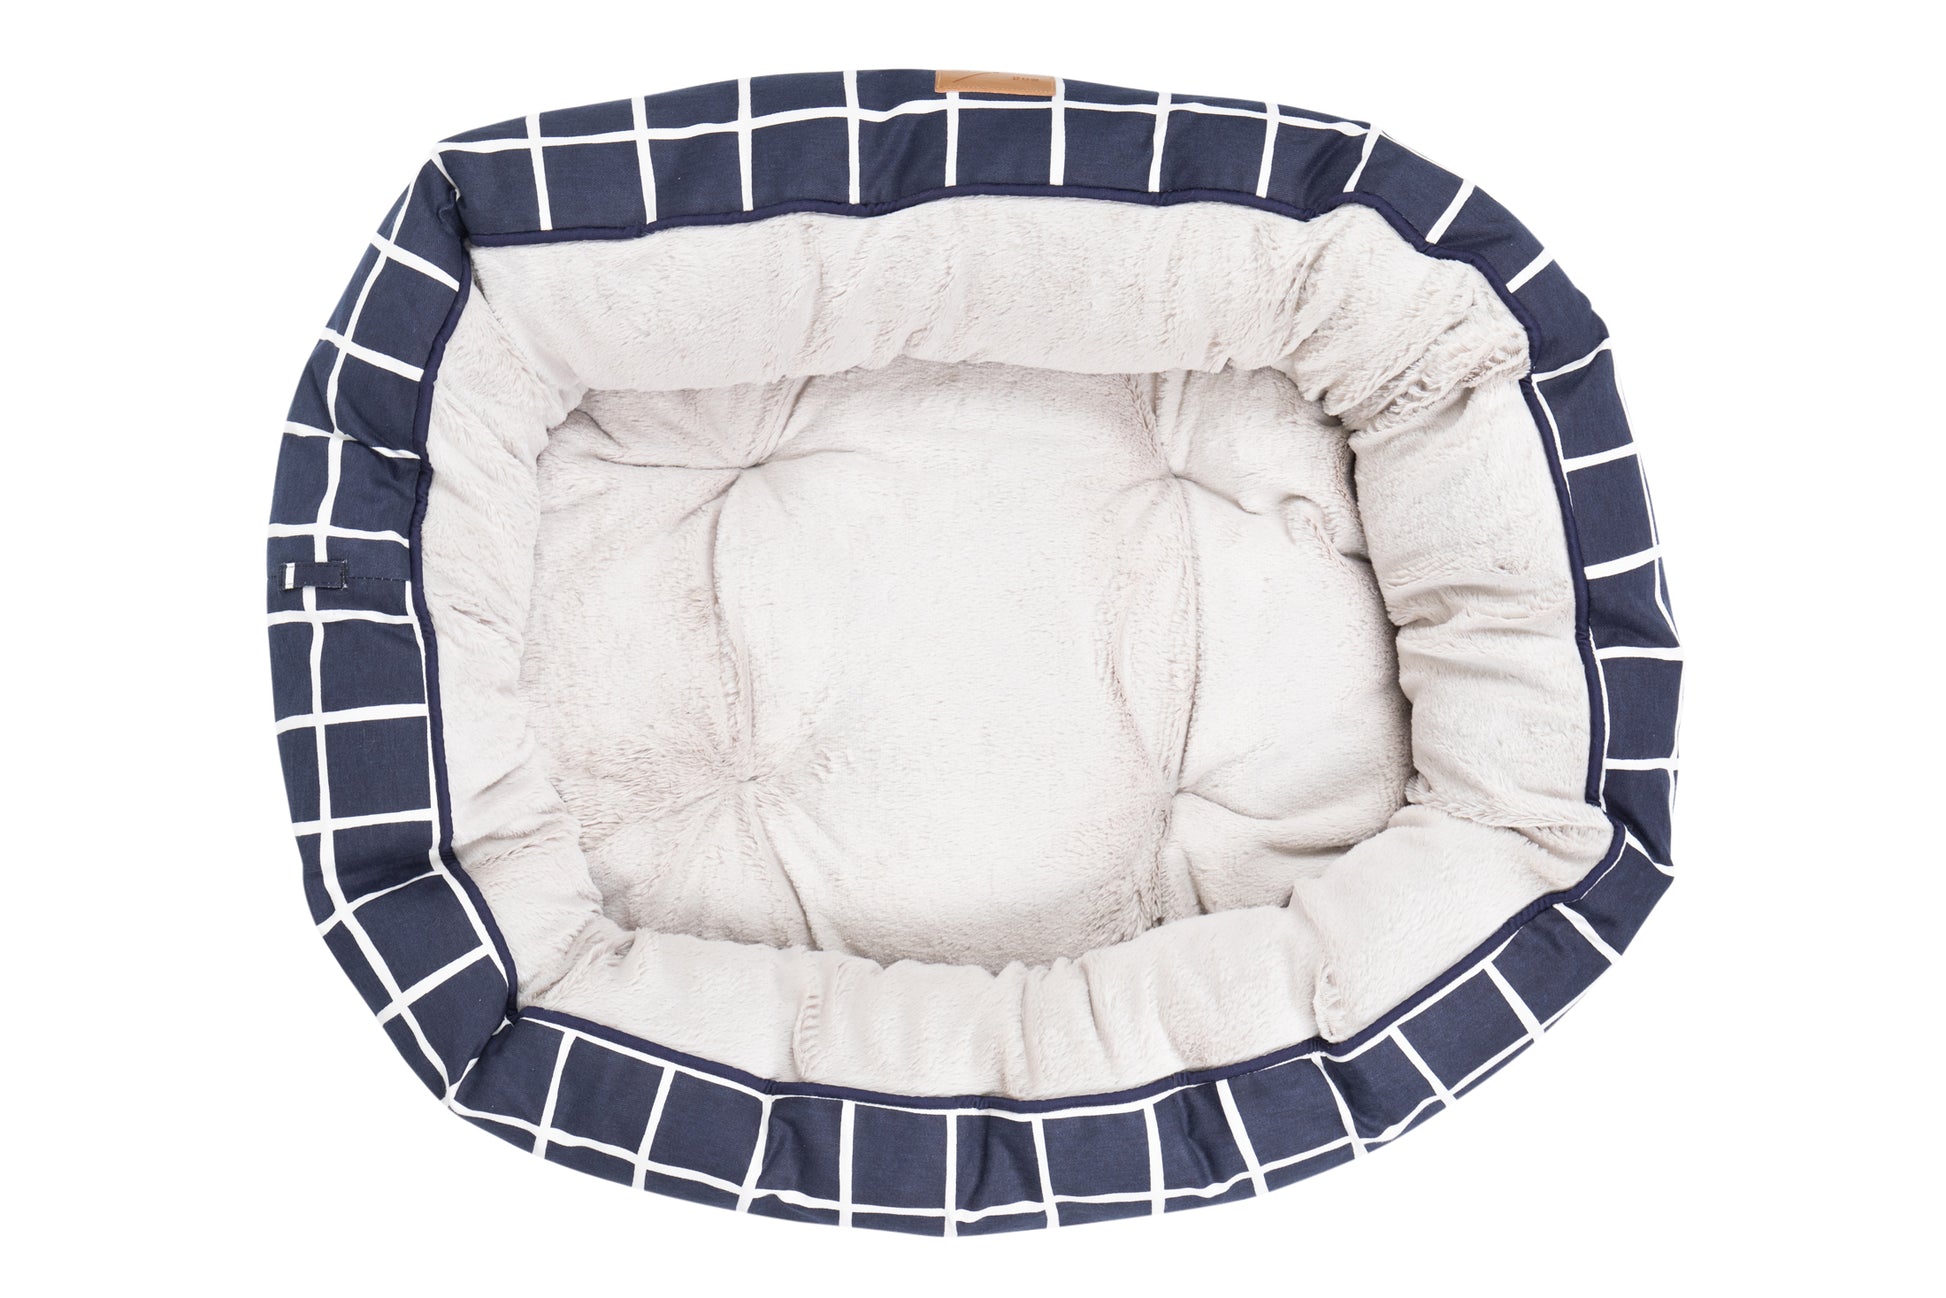 Mog & Bone Pet Products 4 Seasons Reversible Circular Dog Bed - Navy Check Print